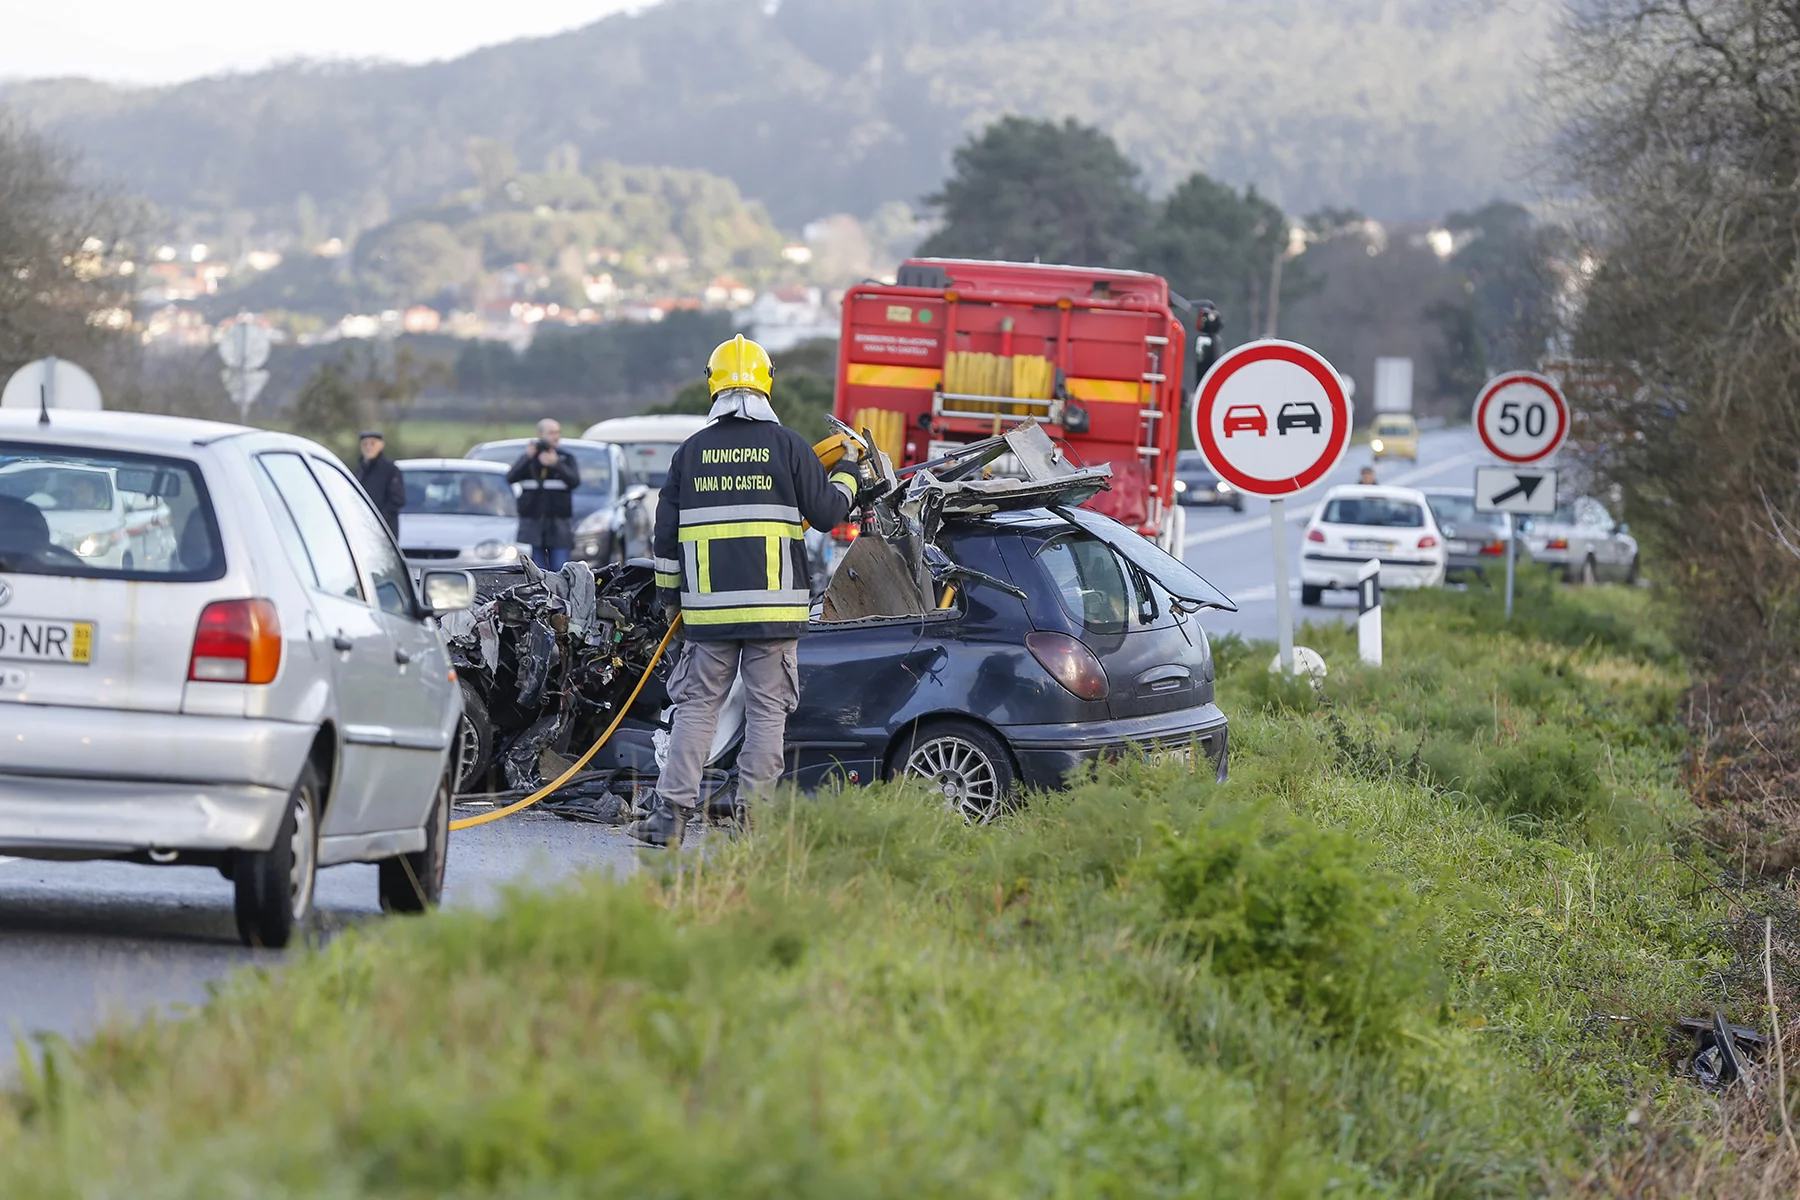 A car crash in rural Portugal